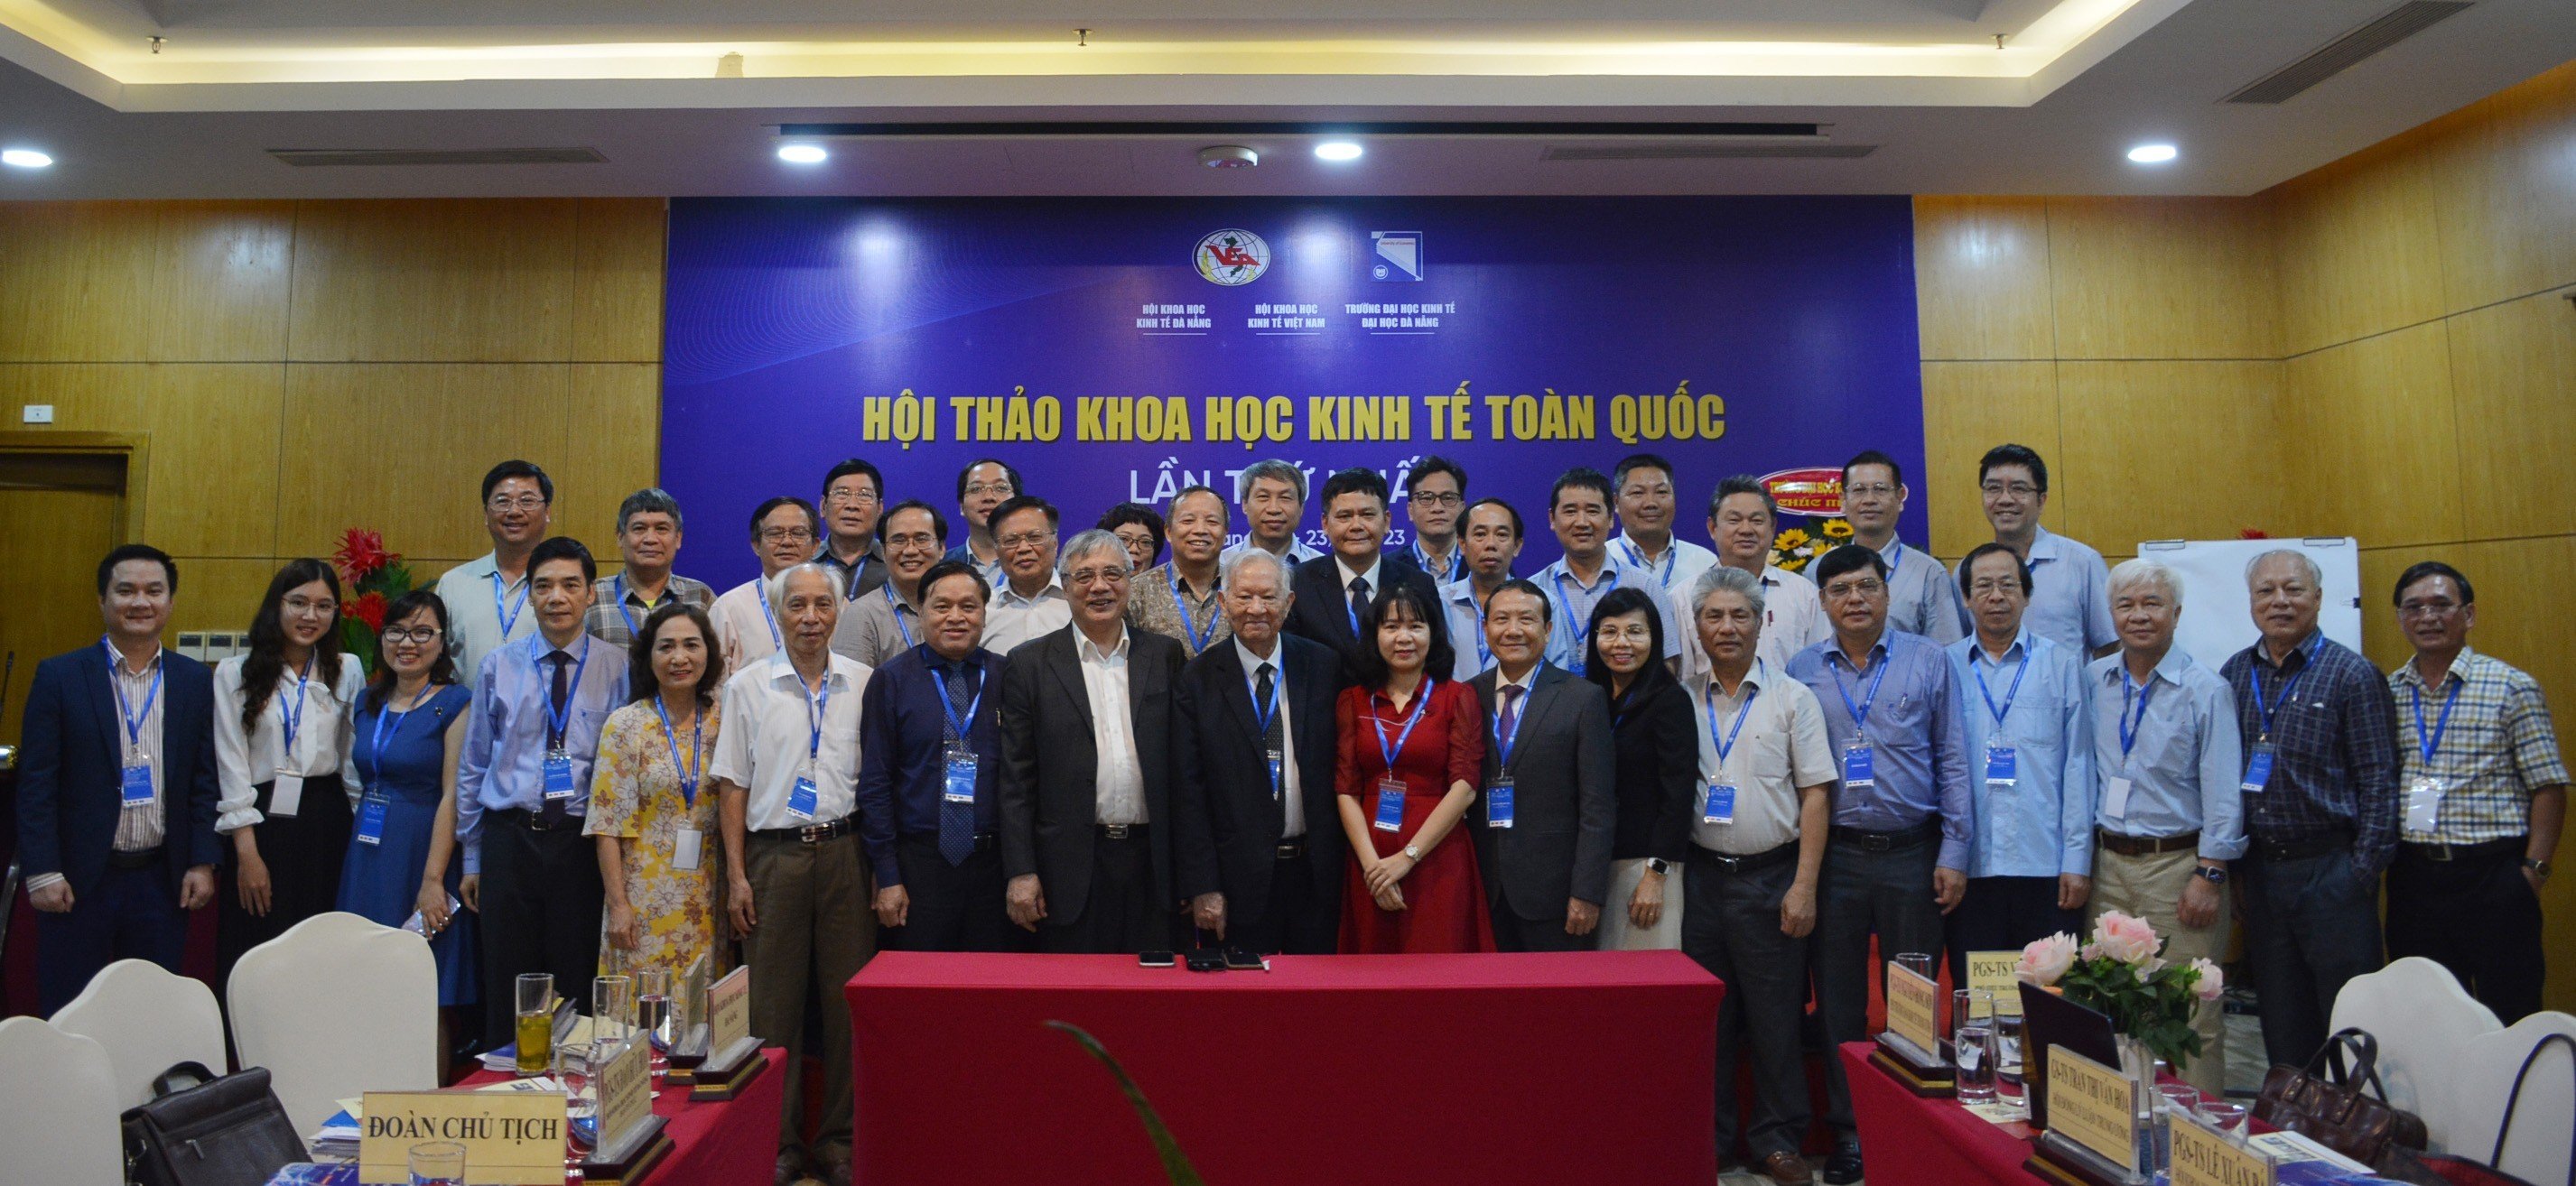 Hội Khoa học Kinh tế Việt Nam: Nâng cao chất lượng nghiên cứu và tư vấn chính sách trong tình hình mới